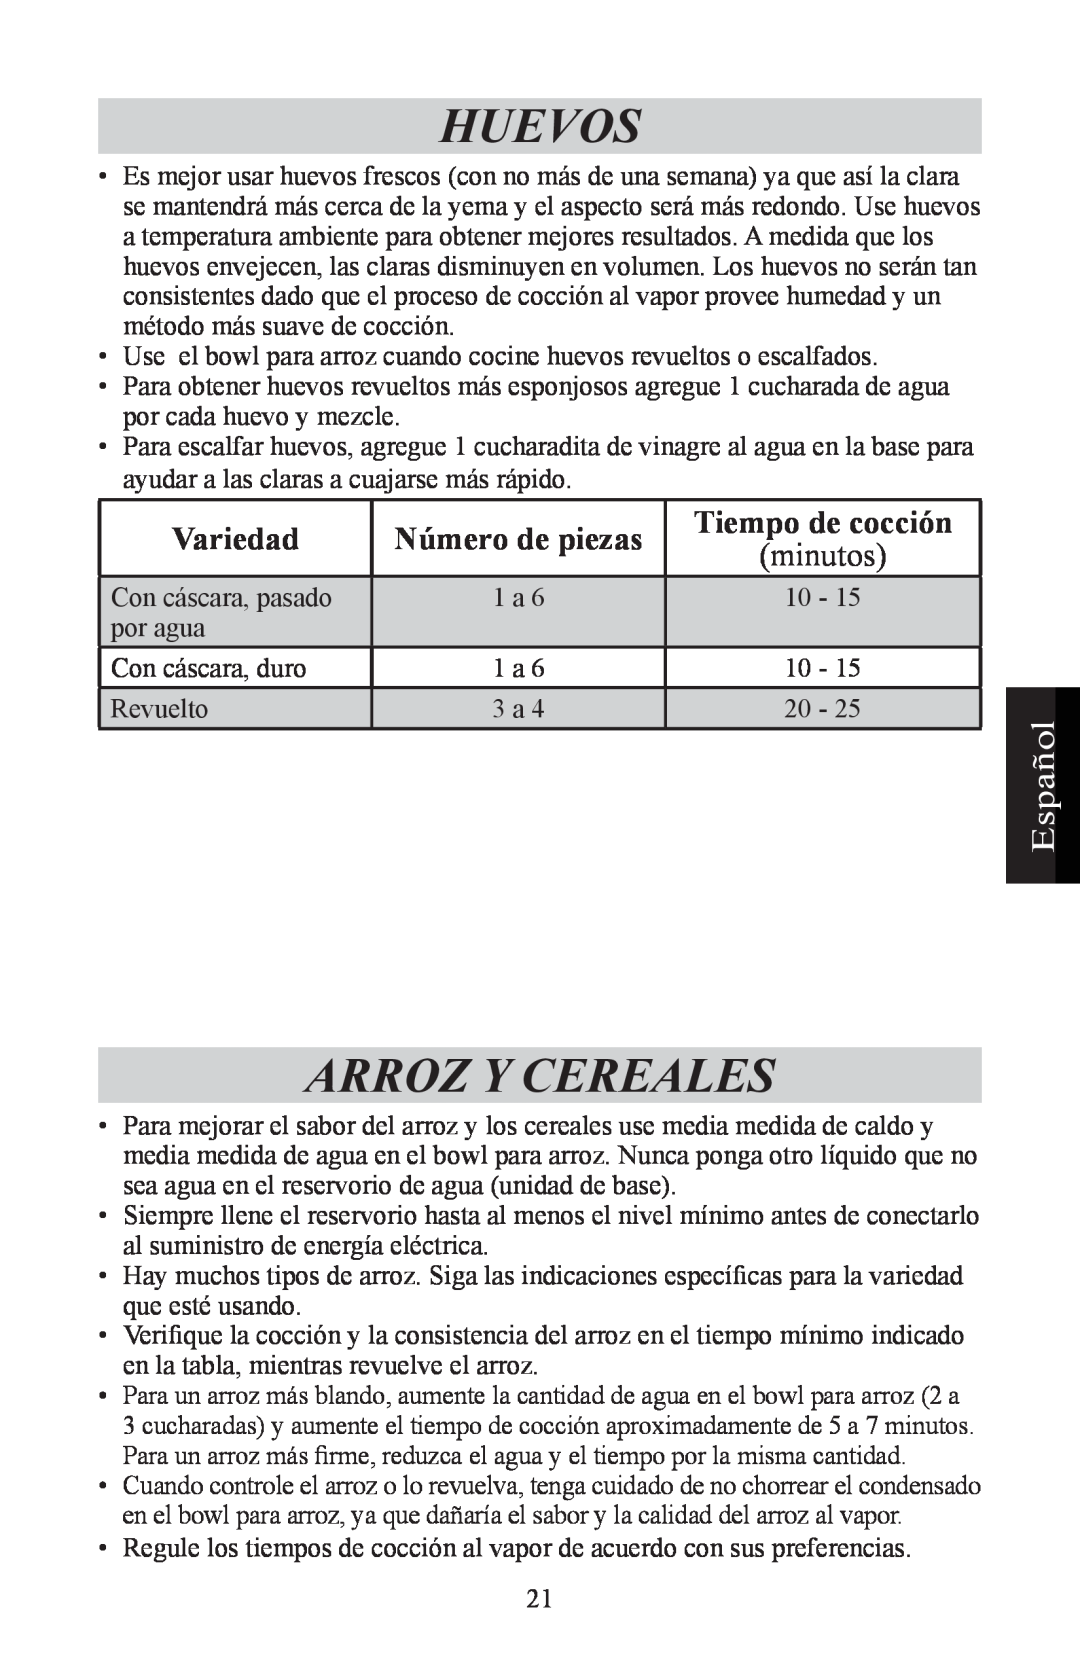 Nesco ST-24 manual Huevos, Arroz Y Cereales, Variedad, Número de piezas, Tiempo de cocción, minutos, Español 